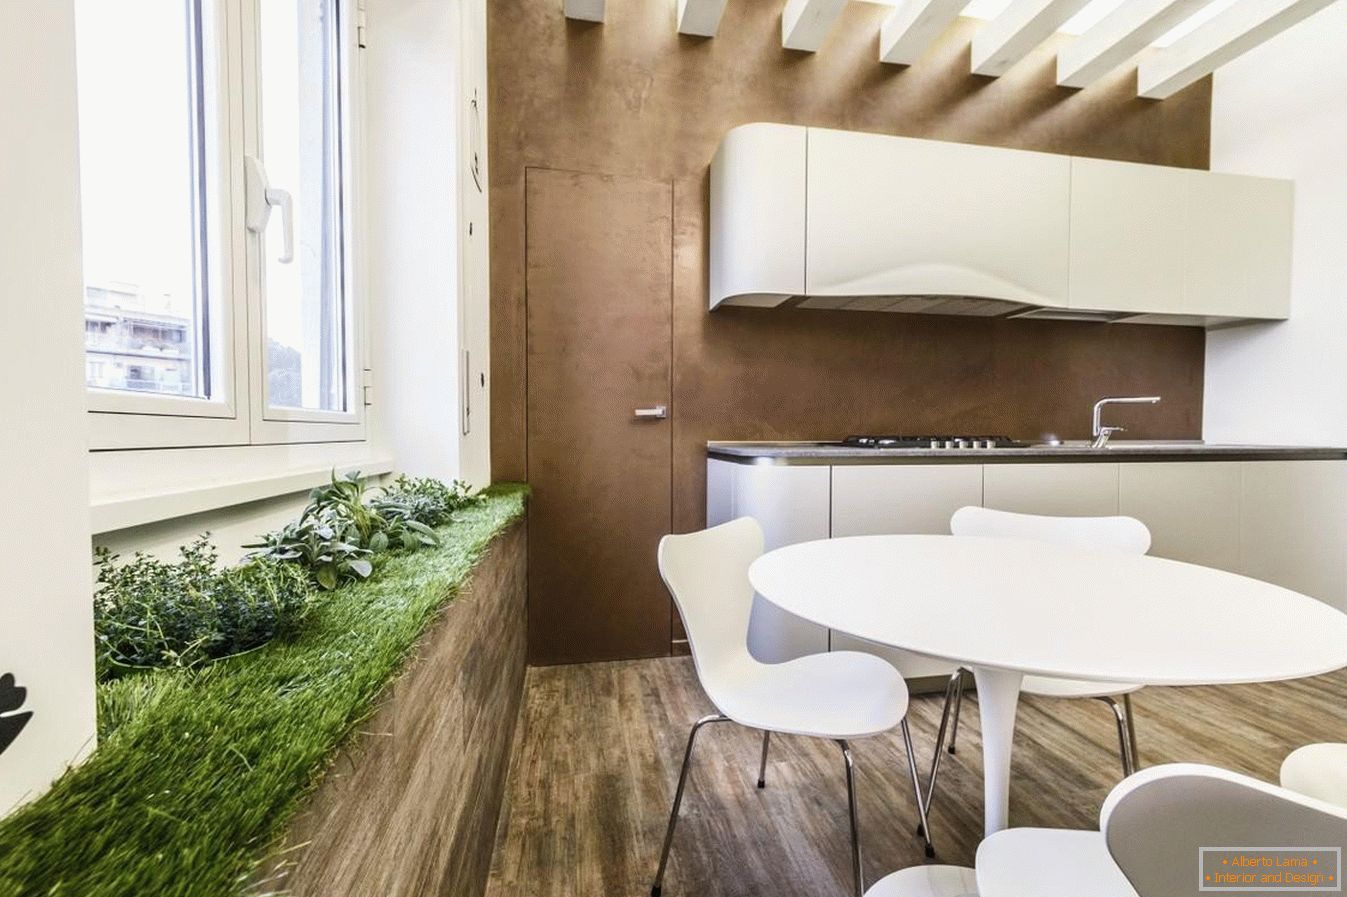 Área verde na cozinha para estilo ecológico